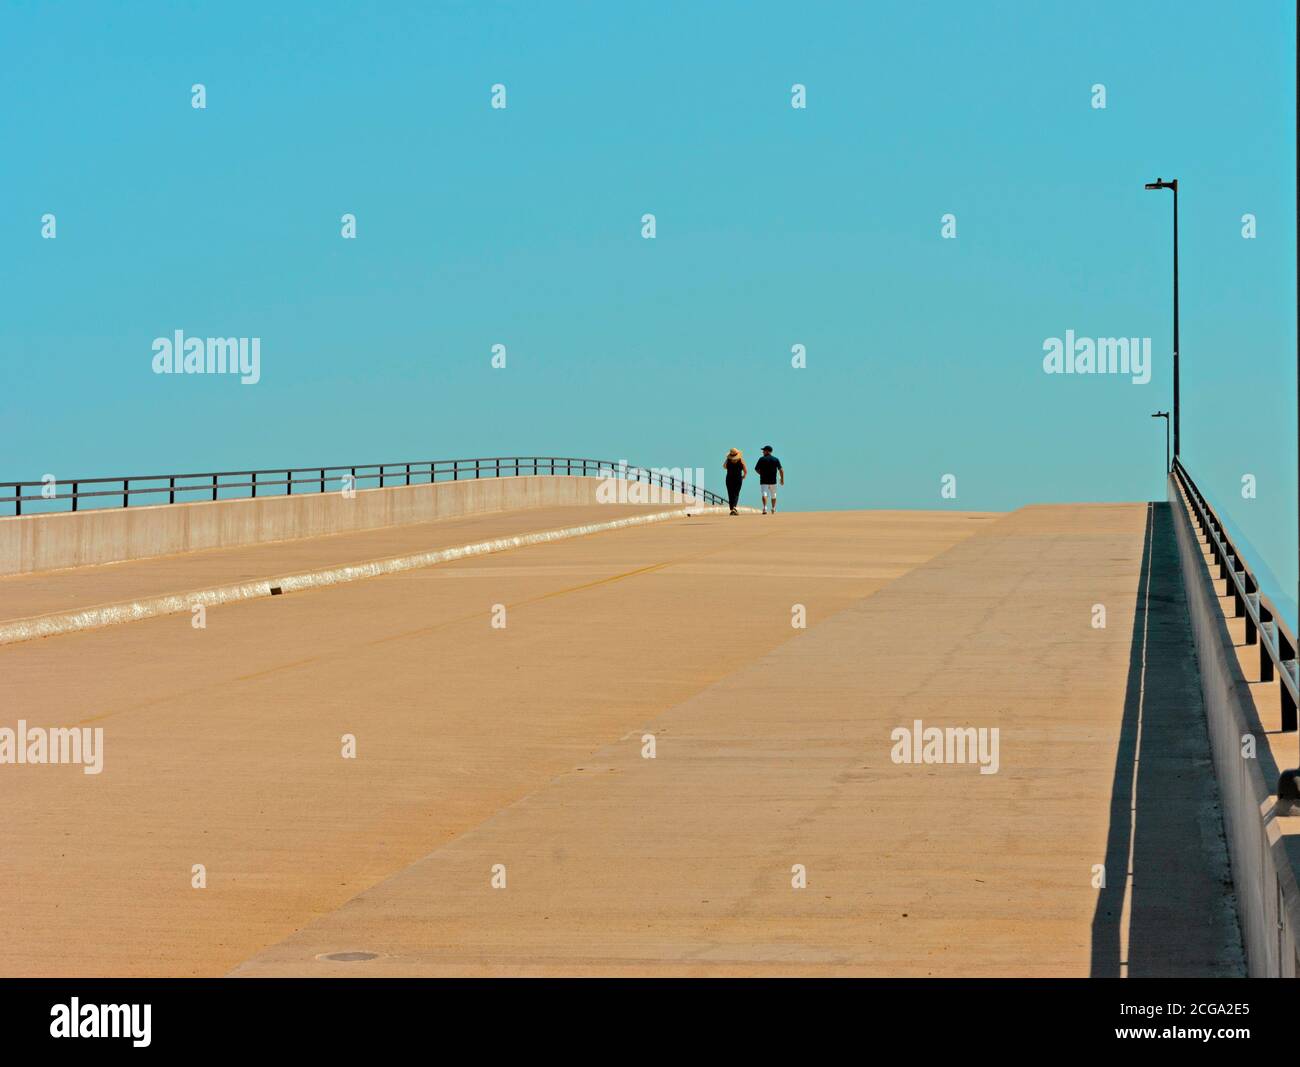 Coppia che cammina sul ponte da solo con lontano cielo blu davanti. Contrasto tra terra e cielo, passato e futuro. Spazio di testo disponibile. Foto Stock